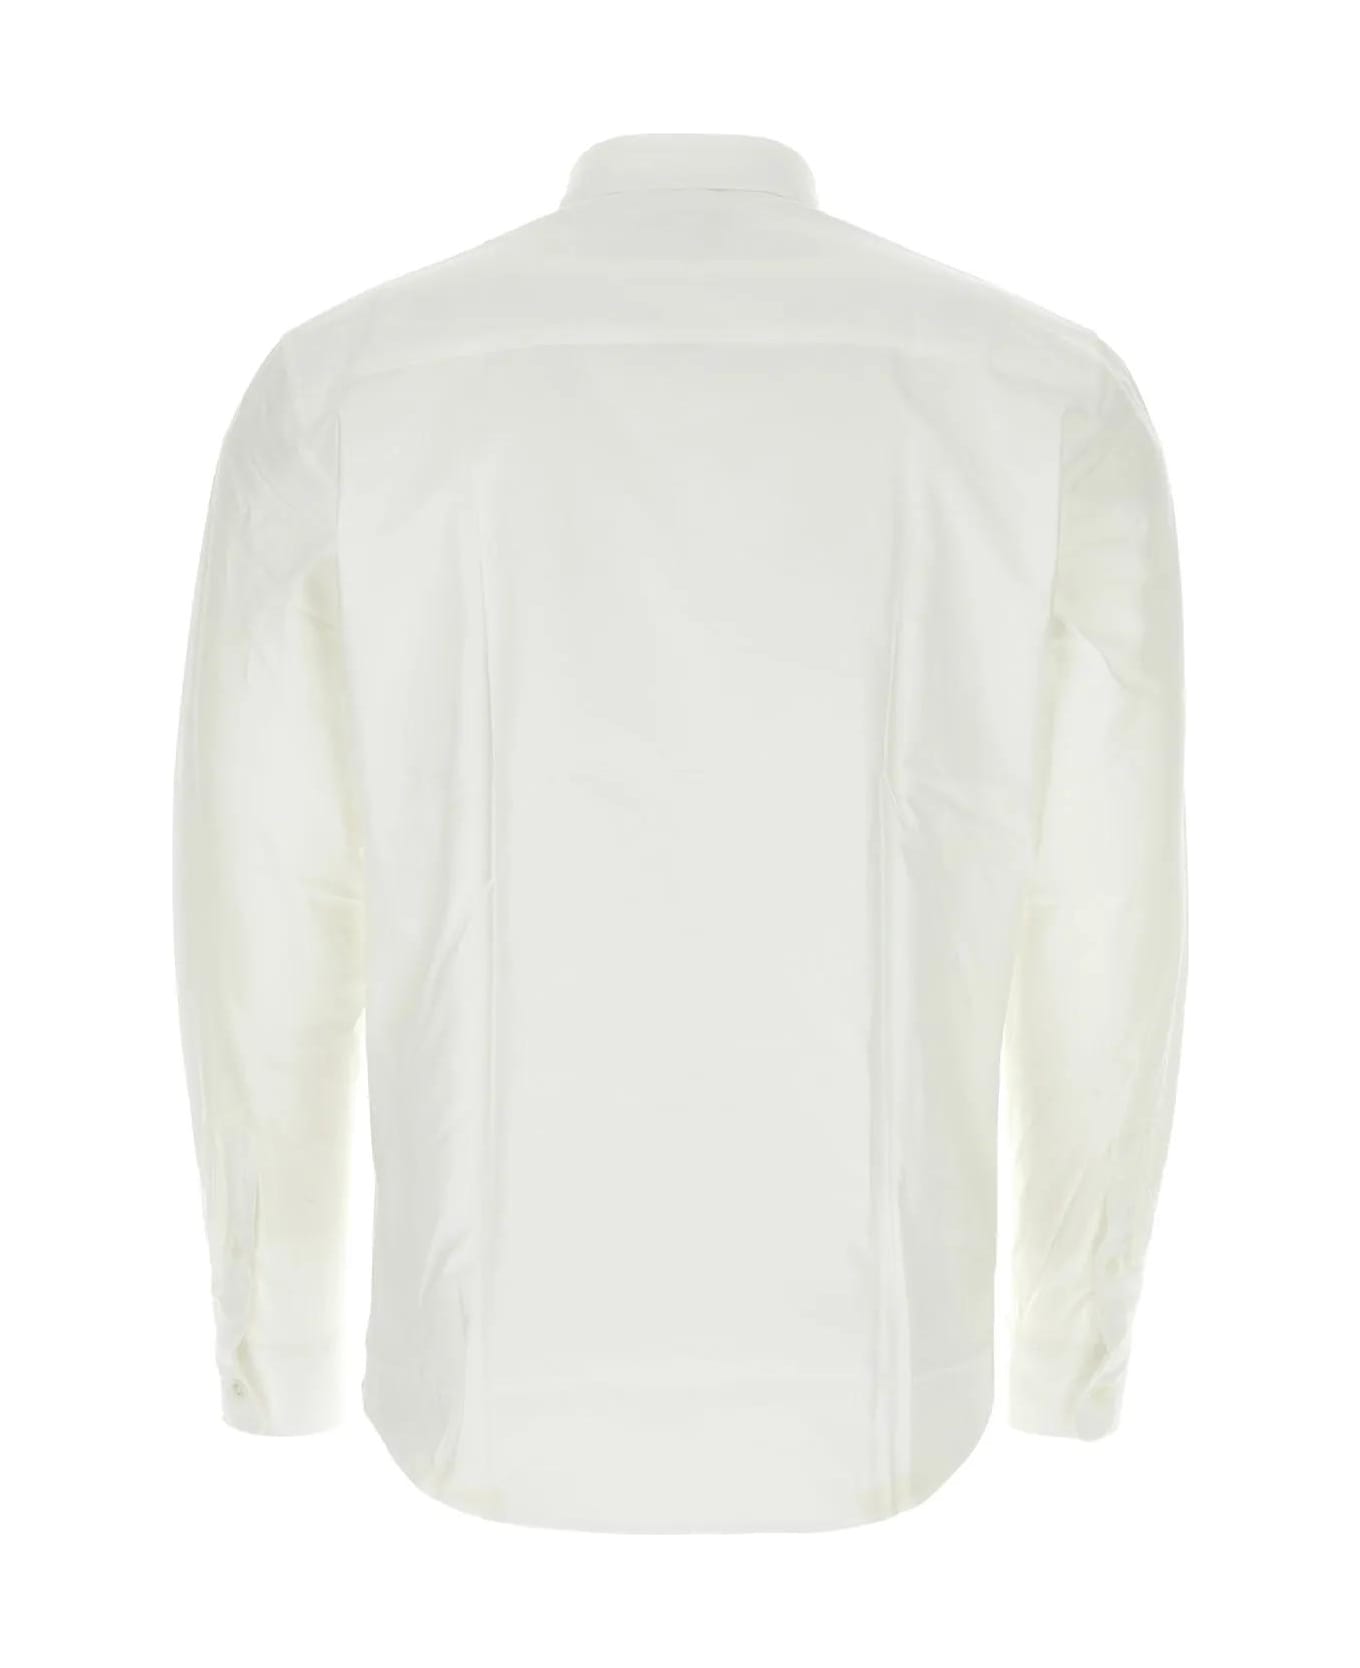 Maison Kitsuné White Cotton Shirt - P100 WHITE シャツ